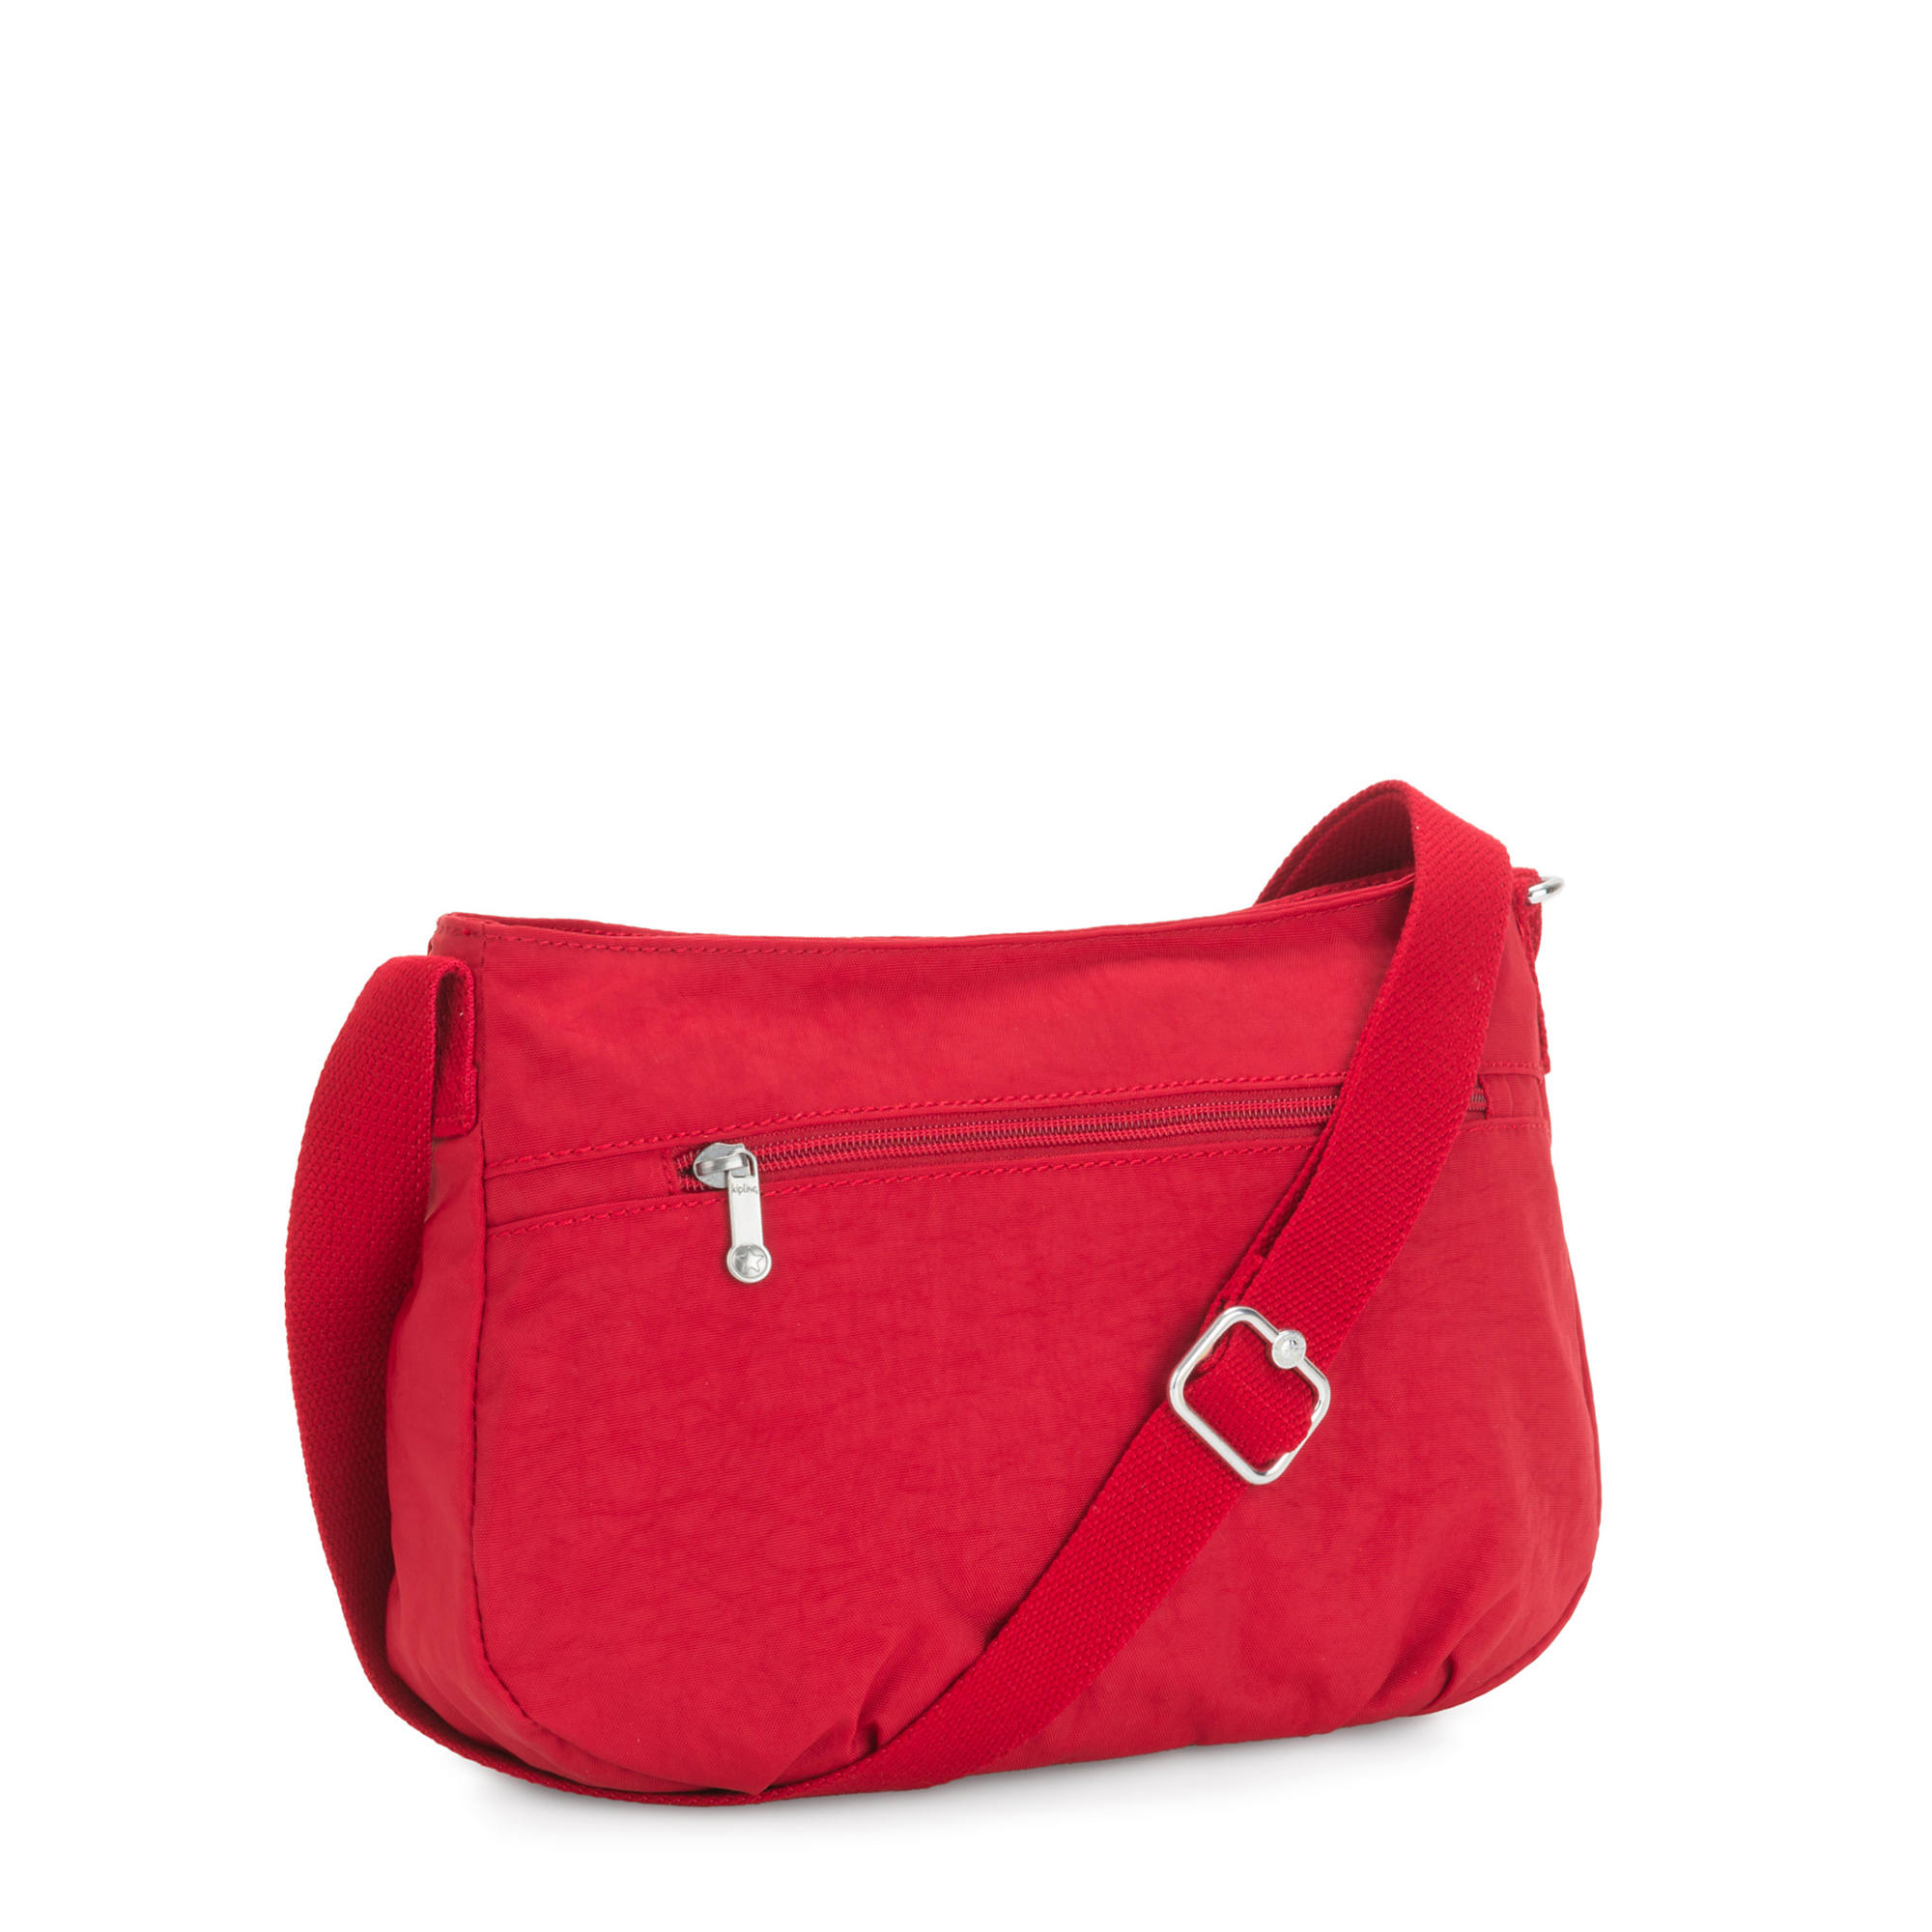 Kipling Syro Crossbody Bag | eBay